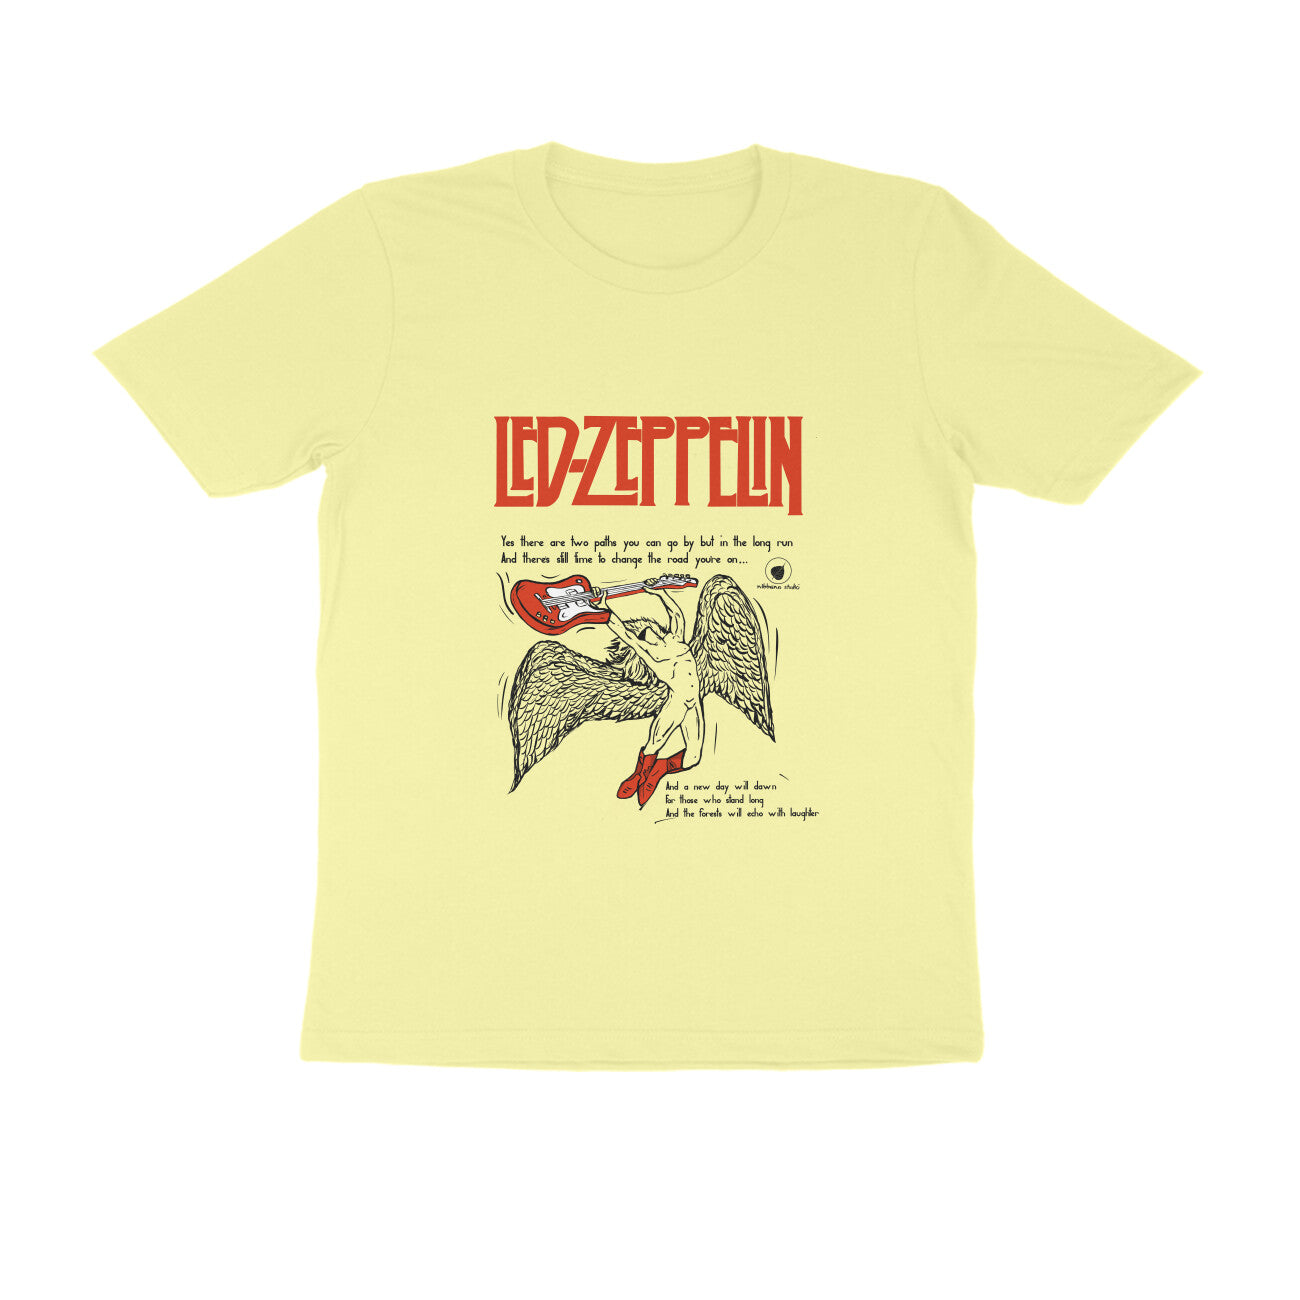 Led Zeppelin Tshirt 🎸